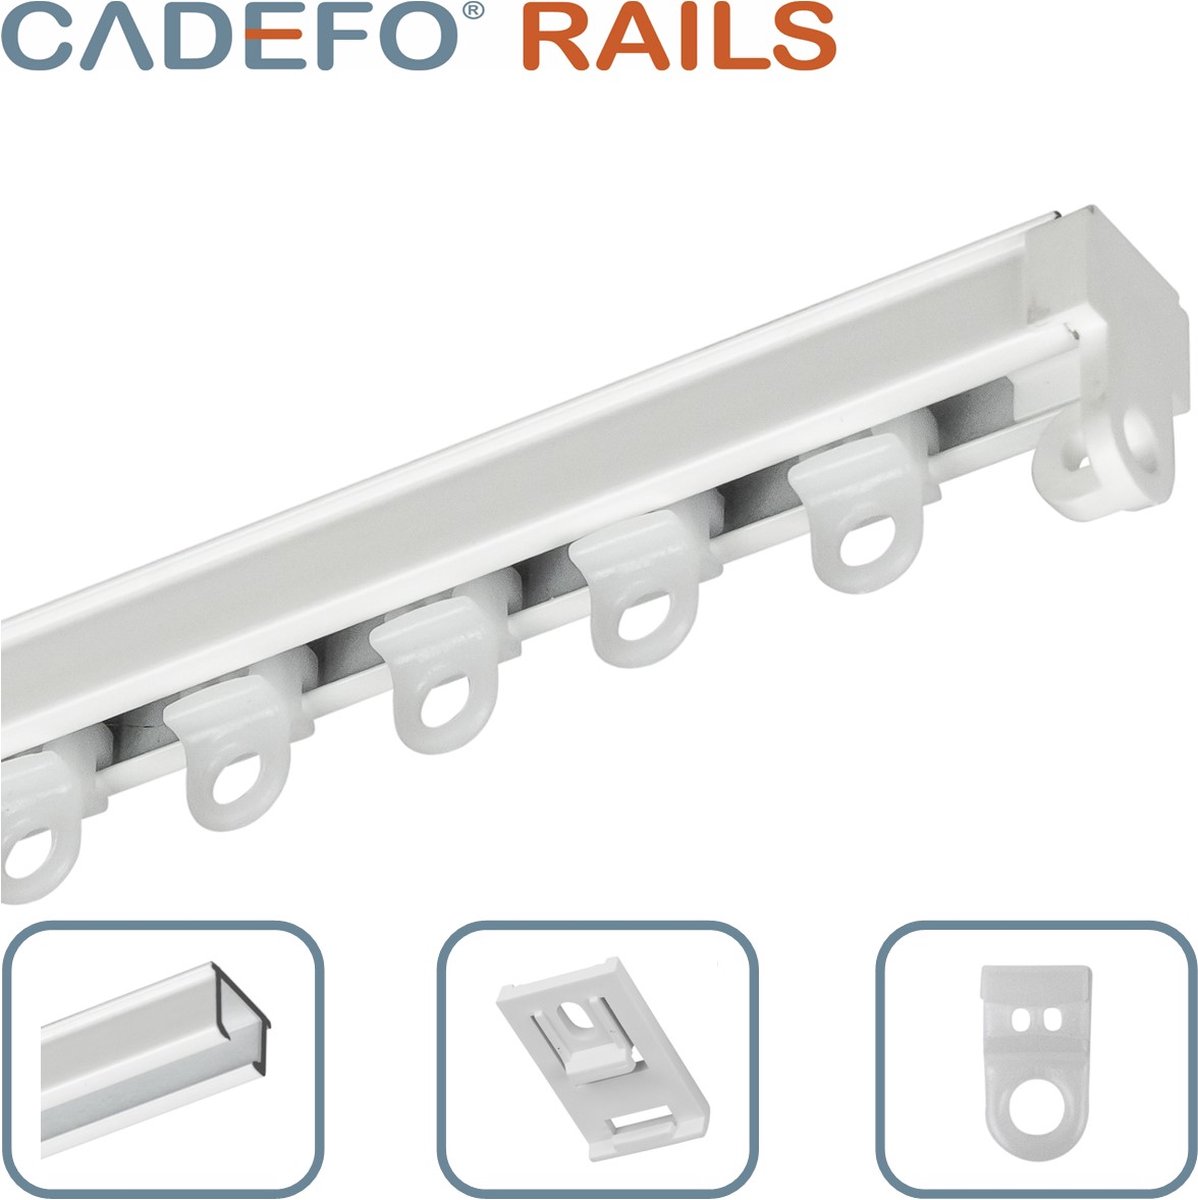 CADEFO RAILS (301 - 350 cm) Gordijnrails - Compleet op maat! - UIT 1 STUK - Leverbaar tot 6 meter - Plafondbevestiging - Lengte 330 cm